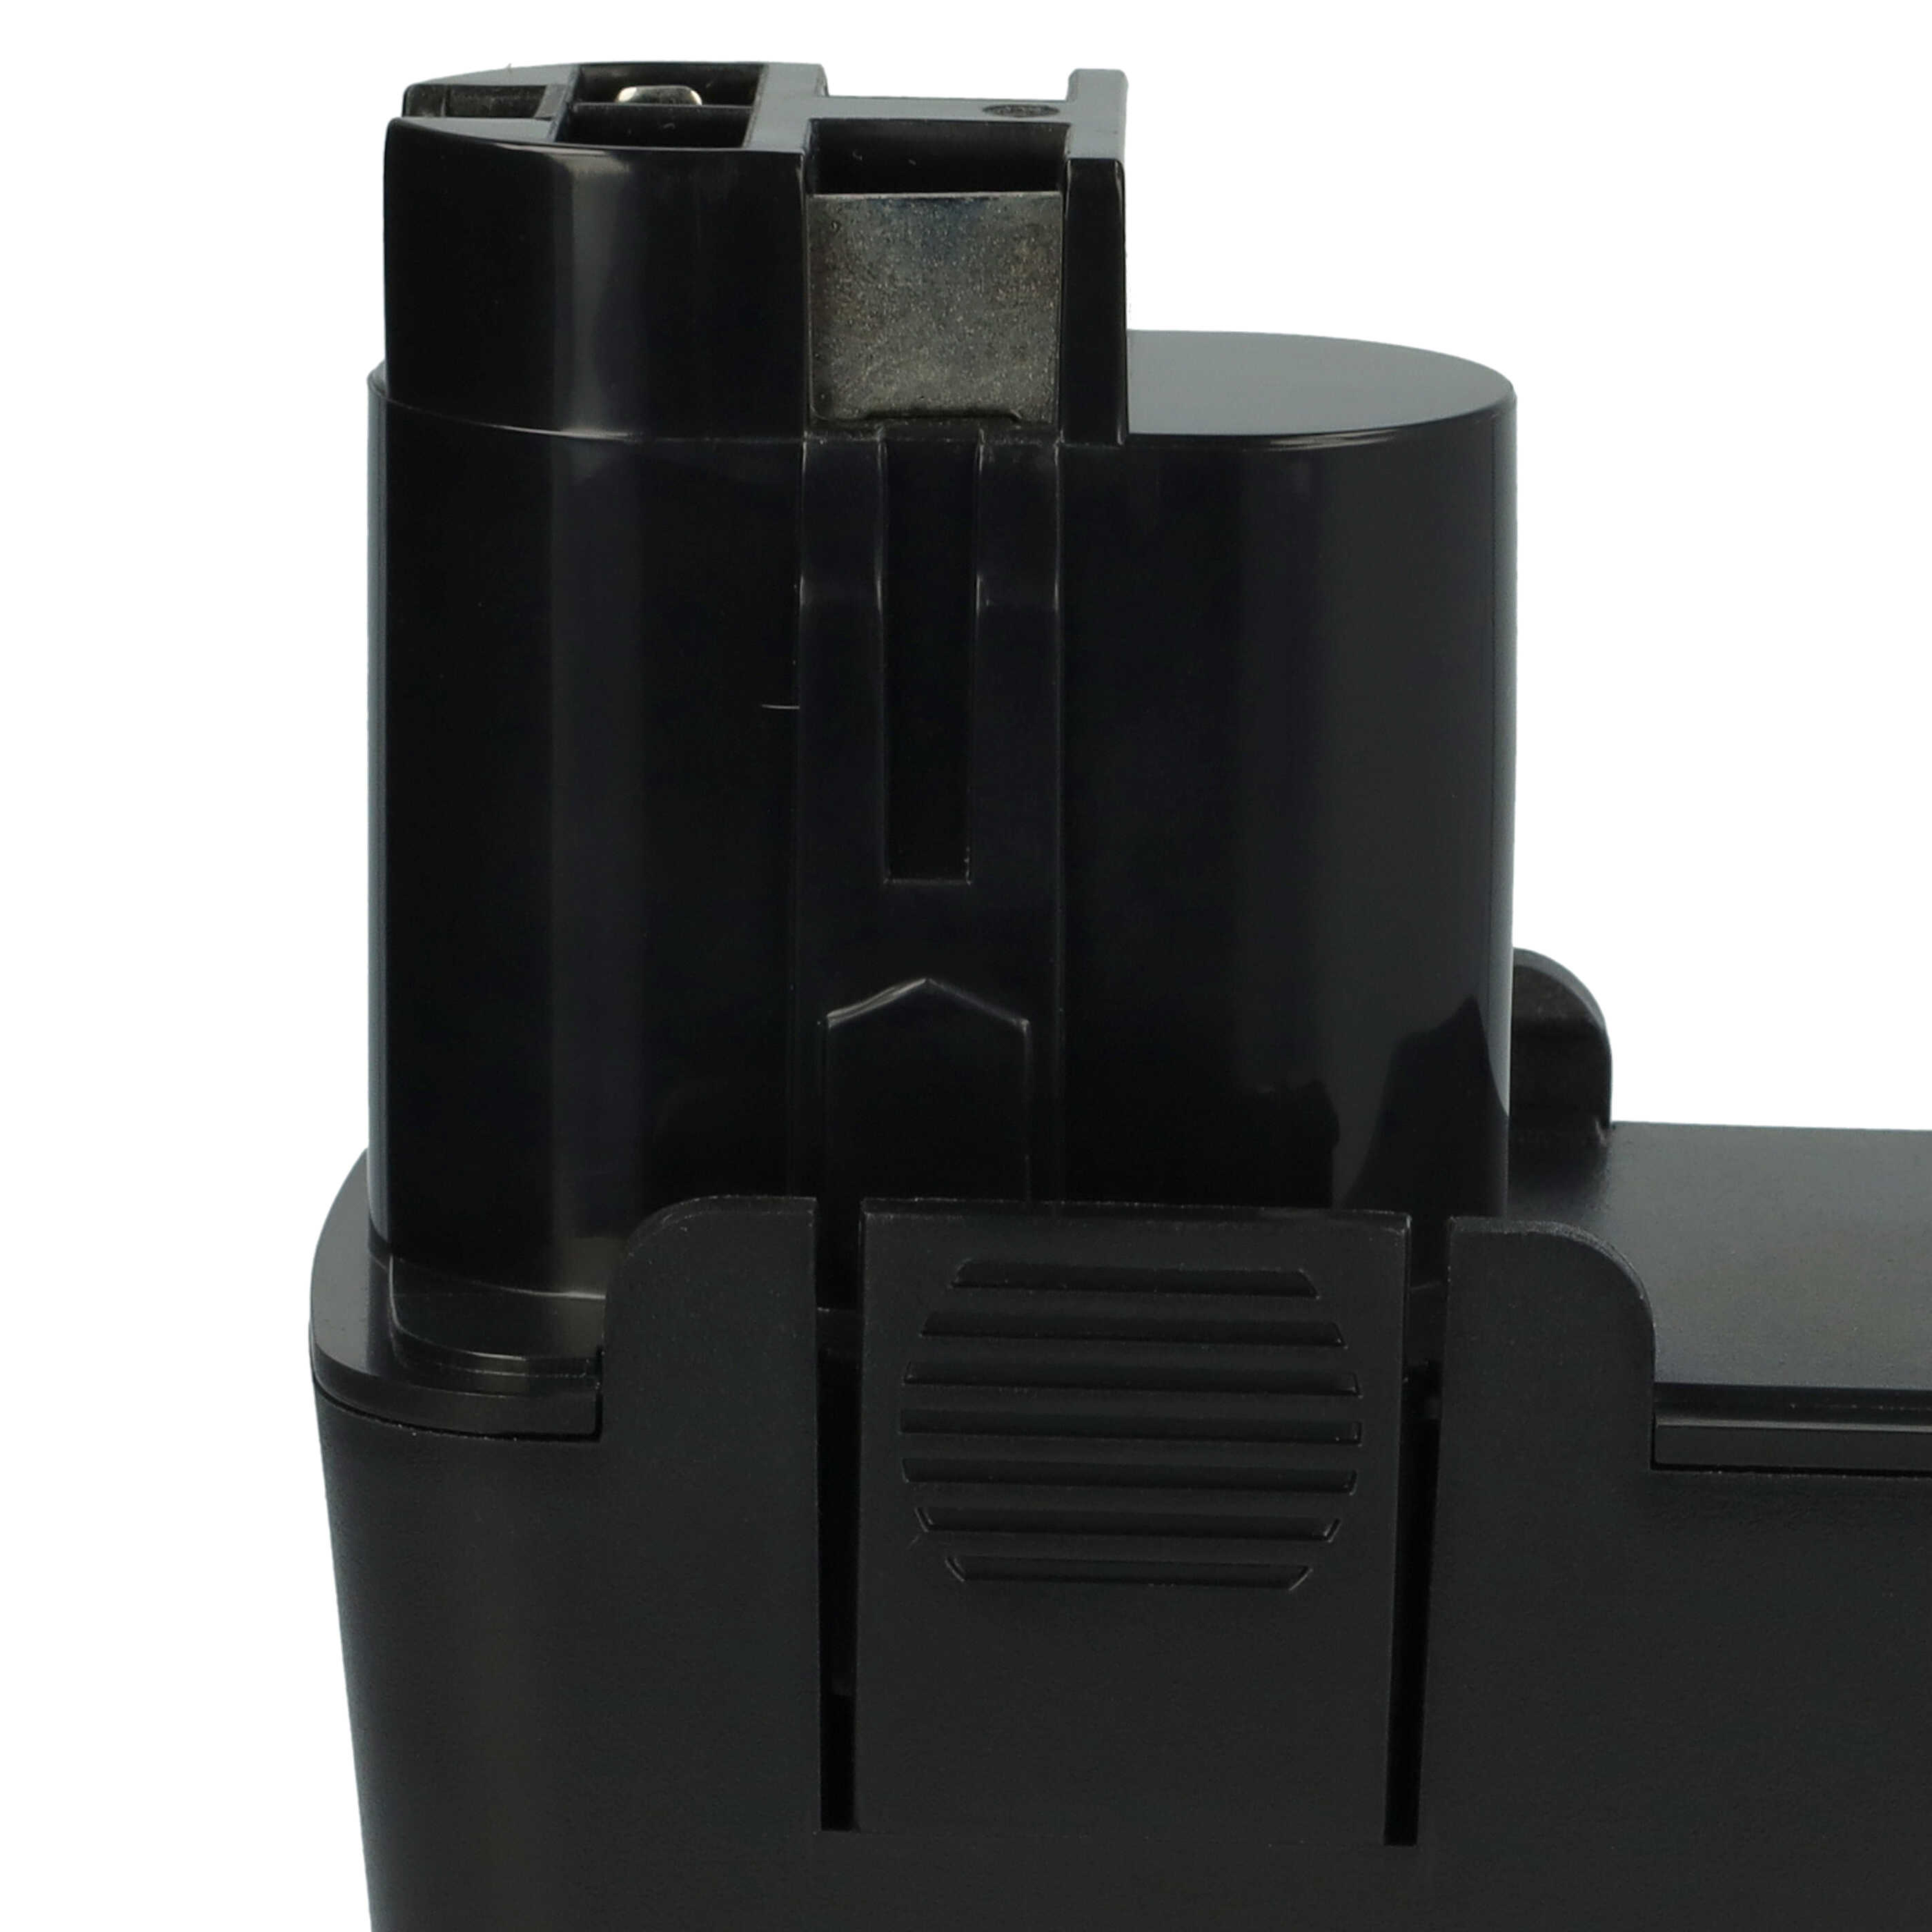 Akumulator do elektronarzędzi zamiennik Bosch 2 607 335 160 - 3000 mAh, 14,4 V, NiMH